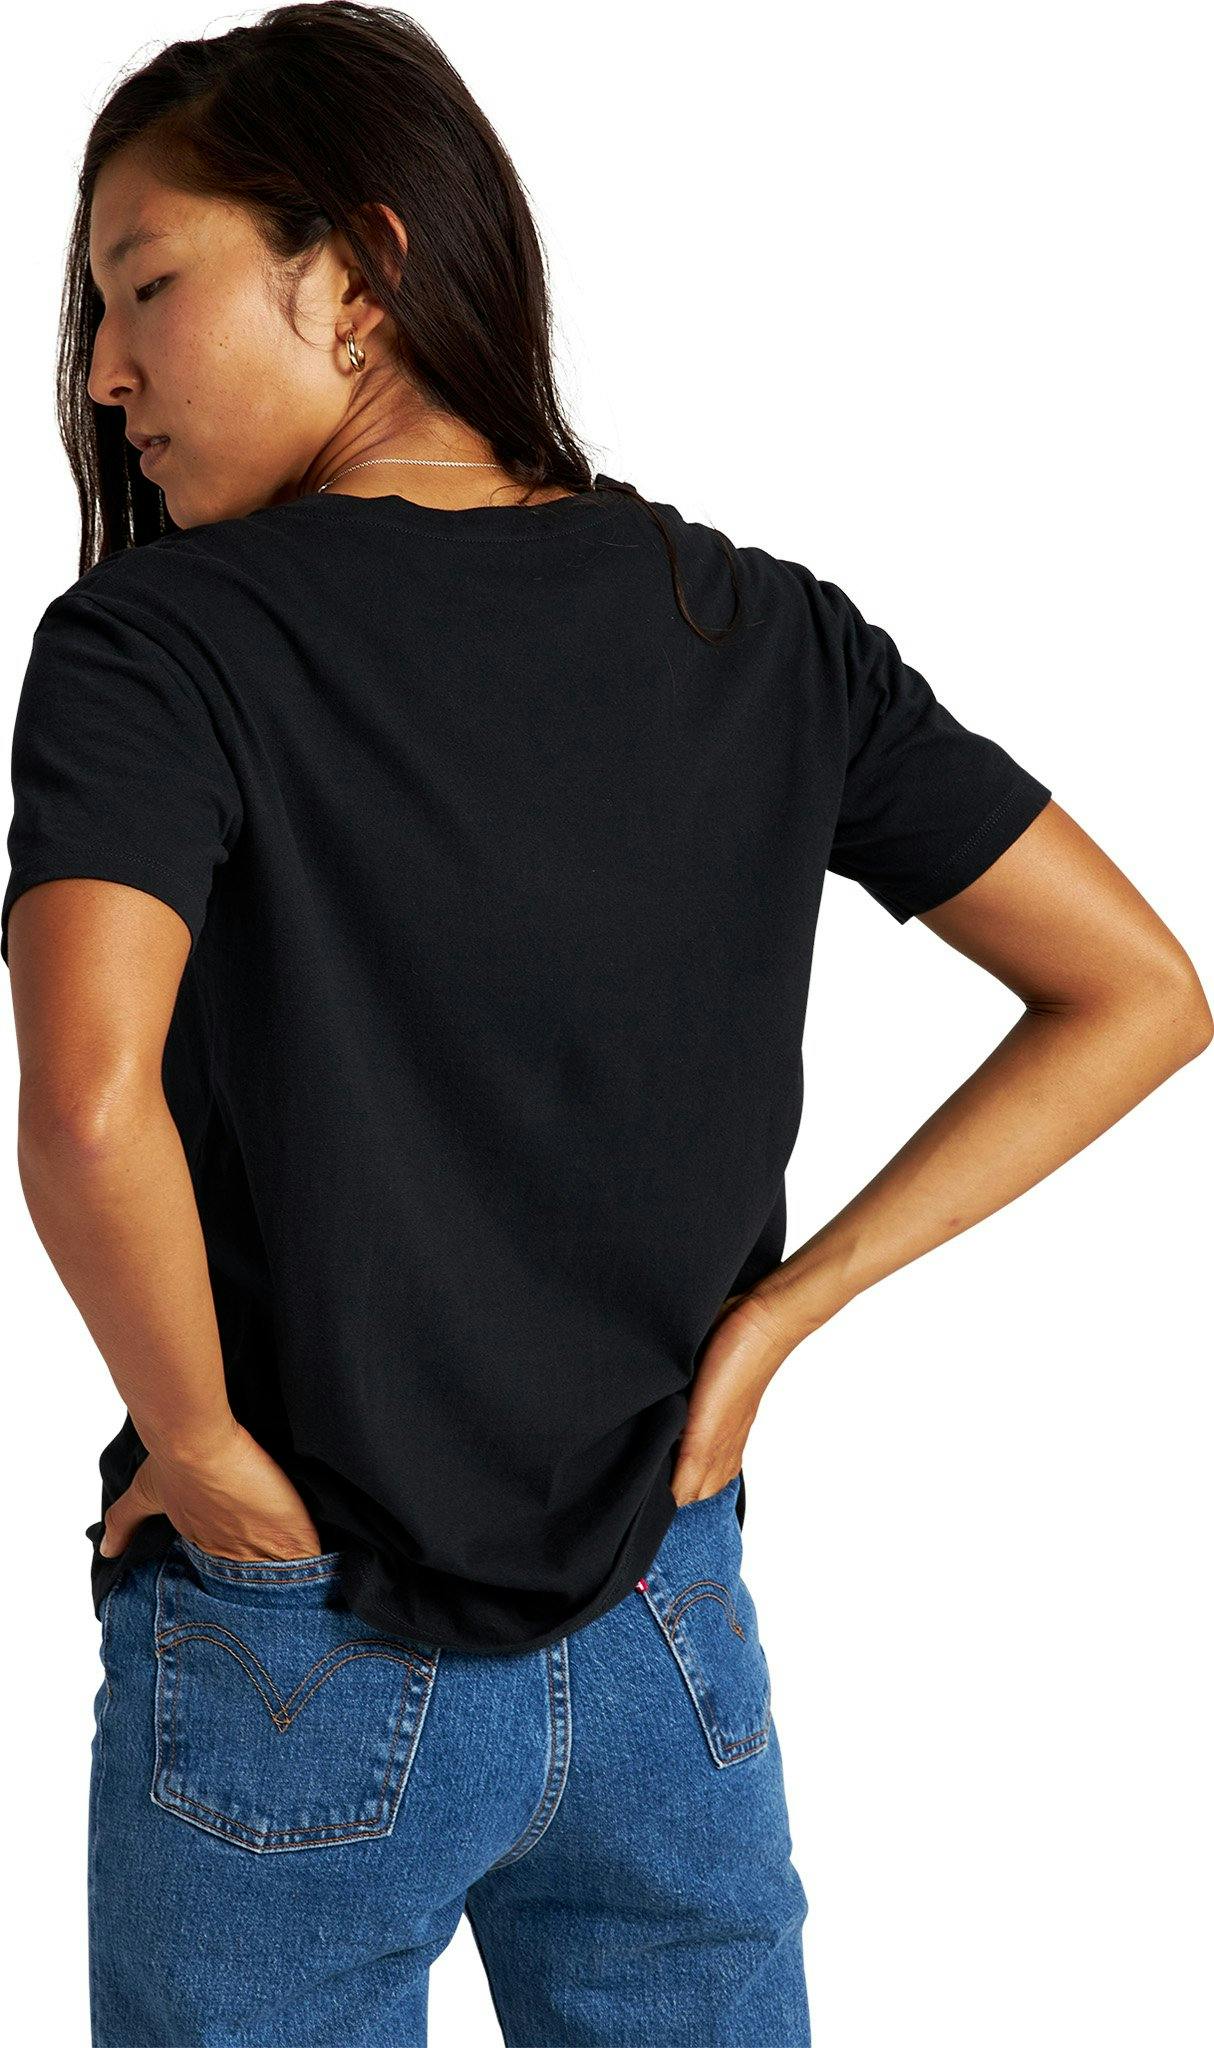 Numéro de l'image de la galerie de produits 4 pour le produit T-shirt à manches courtes Vault - Femme